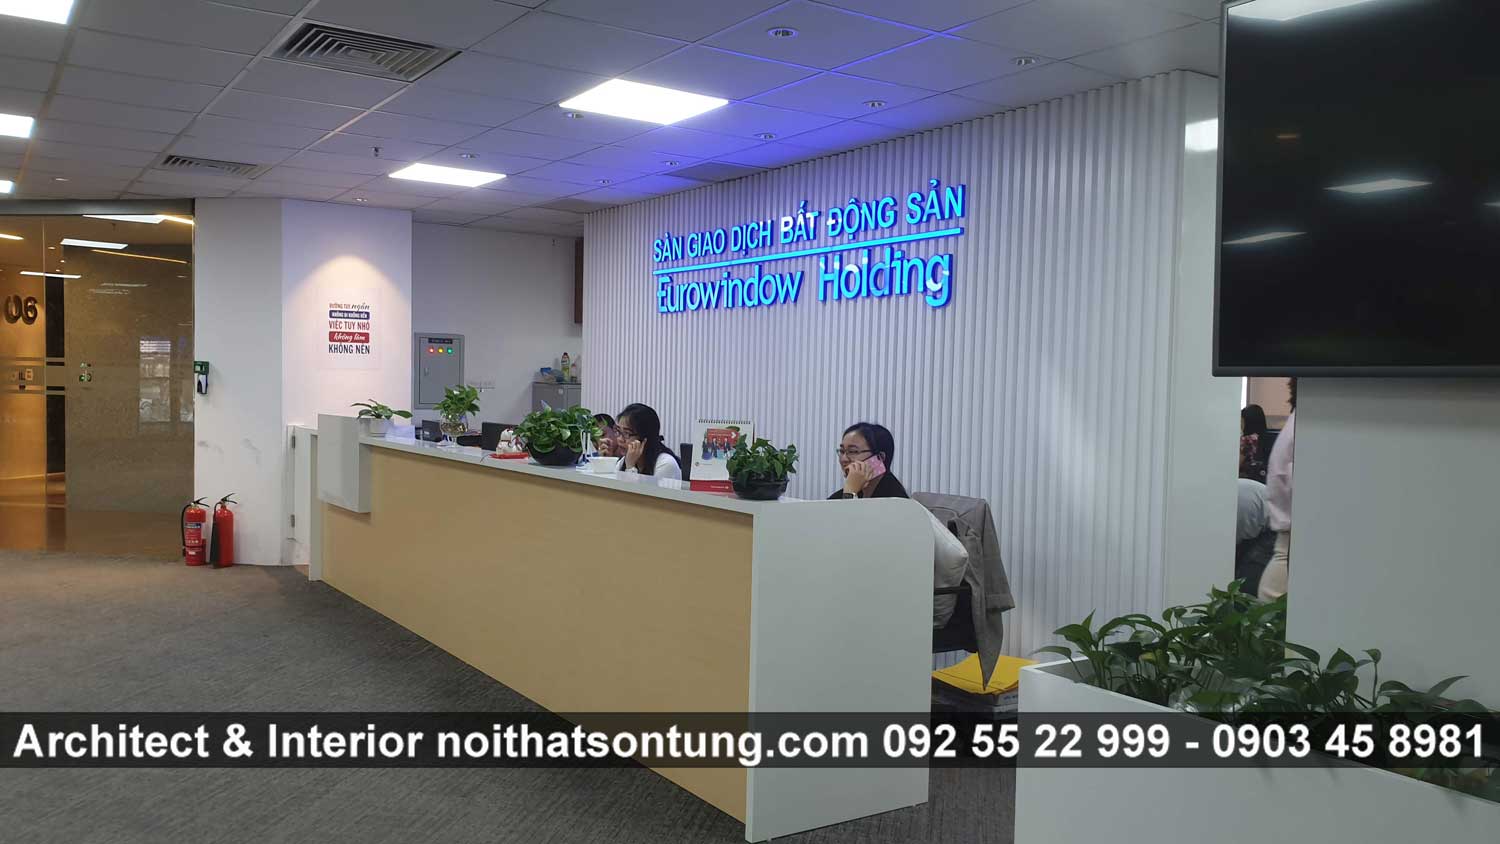 Công ty Nội Thất Sơn Tùng thi công nội thất văn phòng sàn bất động sản Erowindow Holding